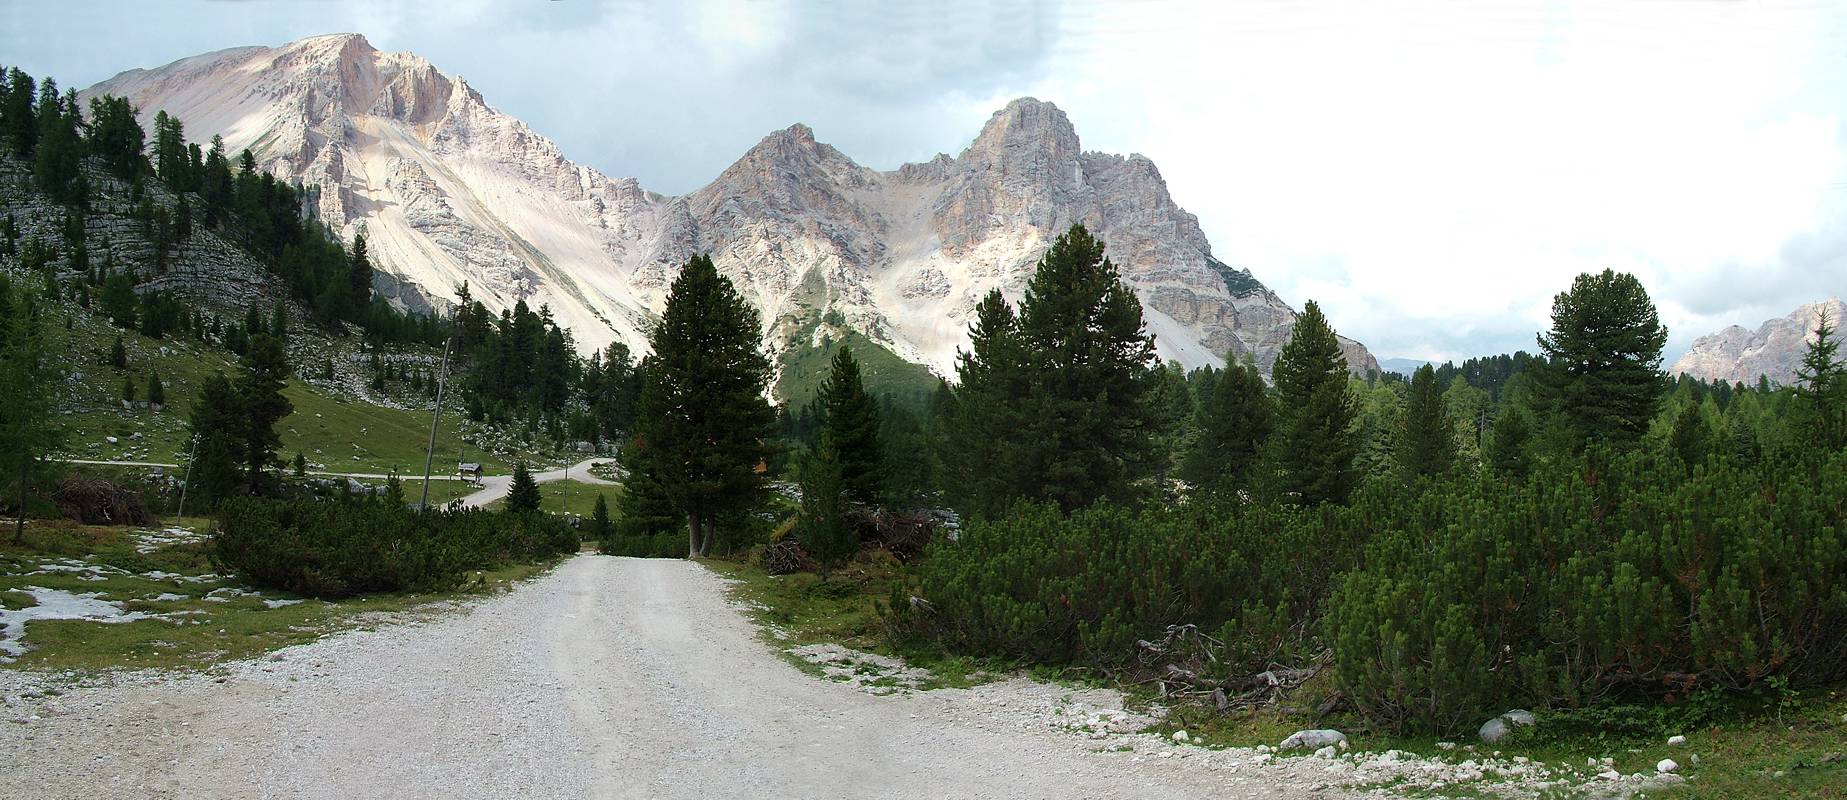 Der Blick zurück über das schöne Tal. Dort unten am Schild trennen sich die Wege zu Lavarello- und Fanes- Hütte.